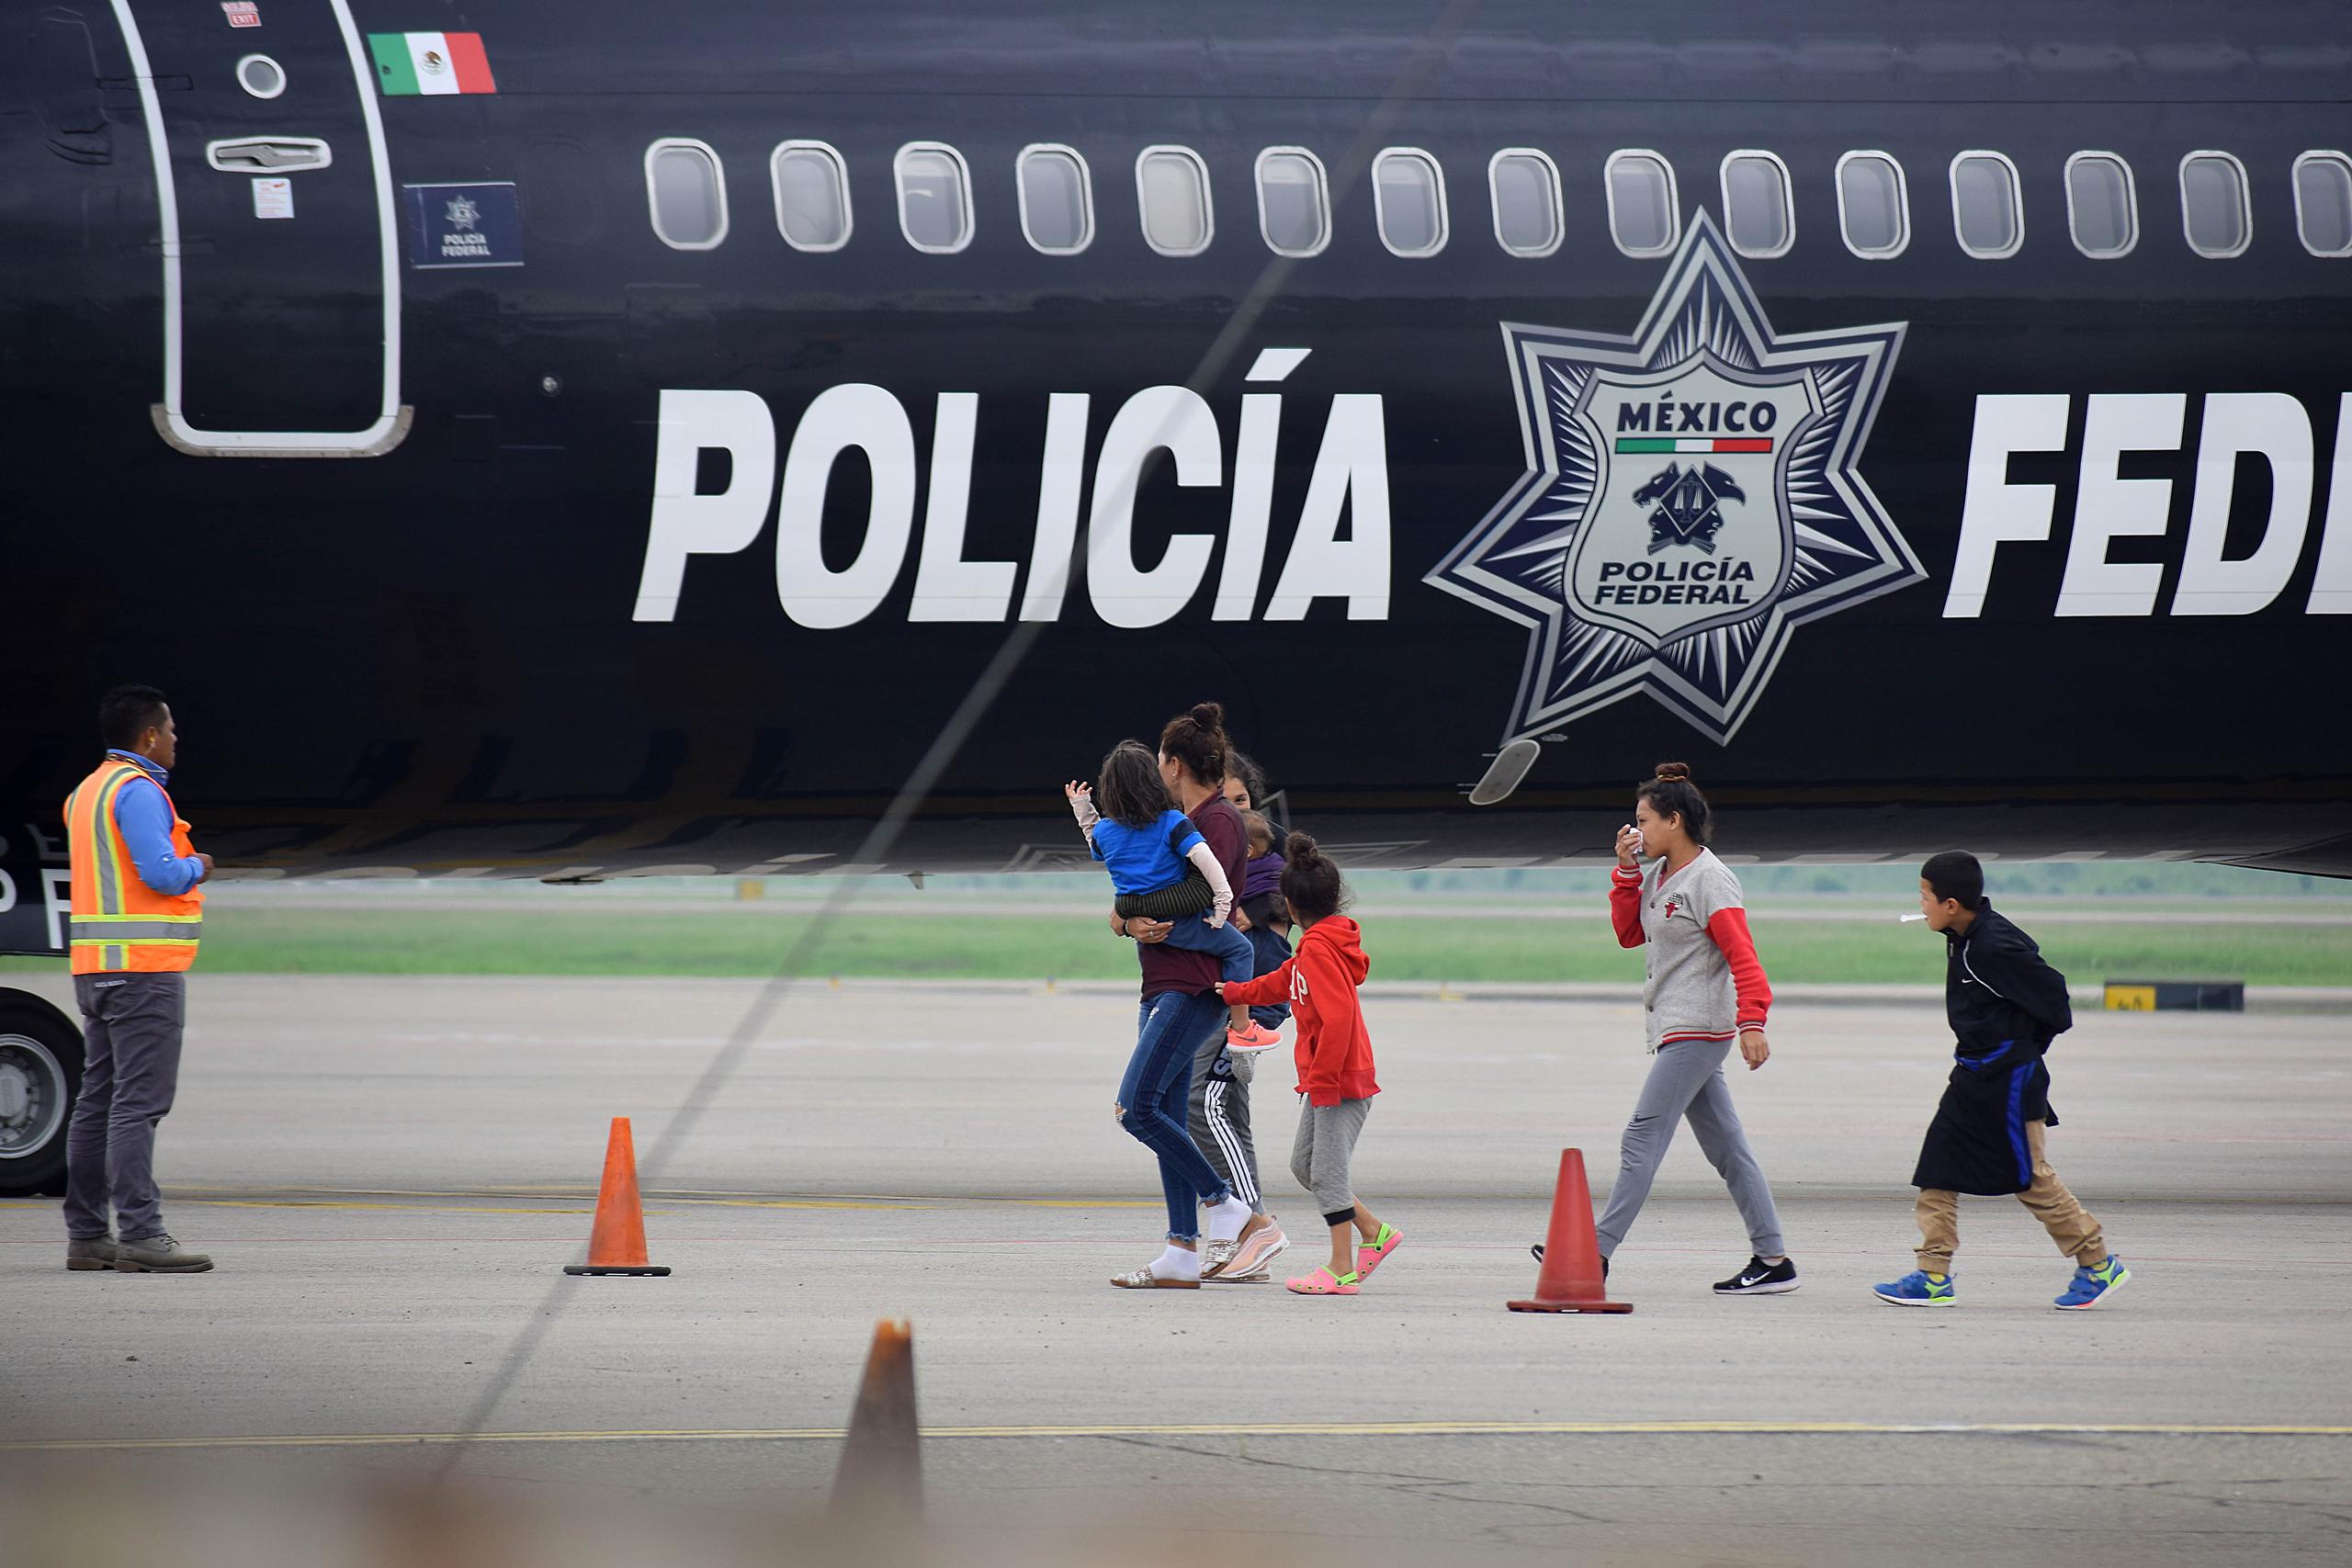 Un grupo de migrantes hondureños que hacía parte de la caravana rumbo a EE.UU. llega en un avión de la policía mexicana este miércoles al aeropuerto Ramón Villeda Morales, cerca de San Pedro Sula (Honduras), luego de ser deportados desde ese país.